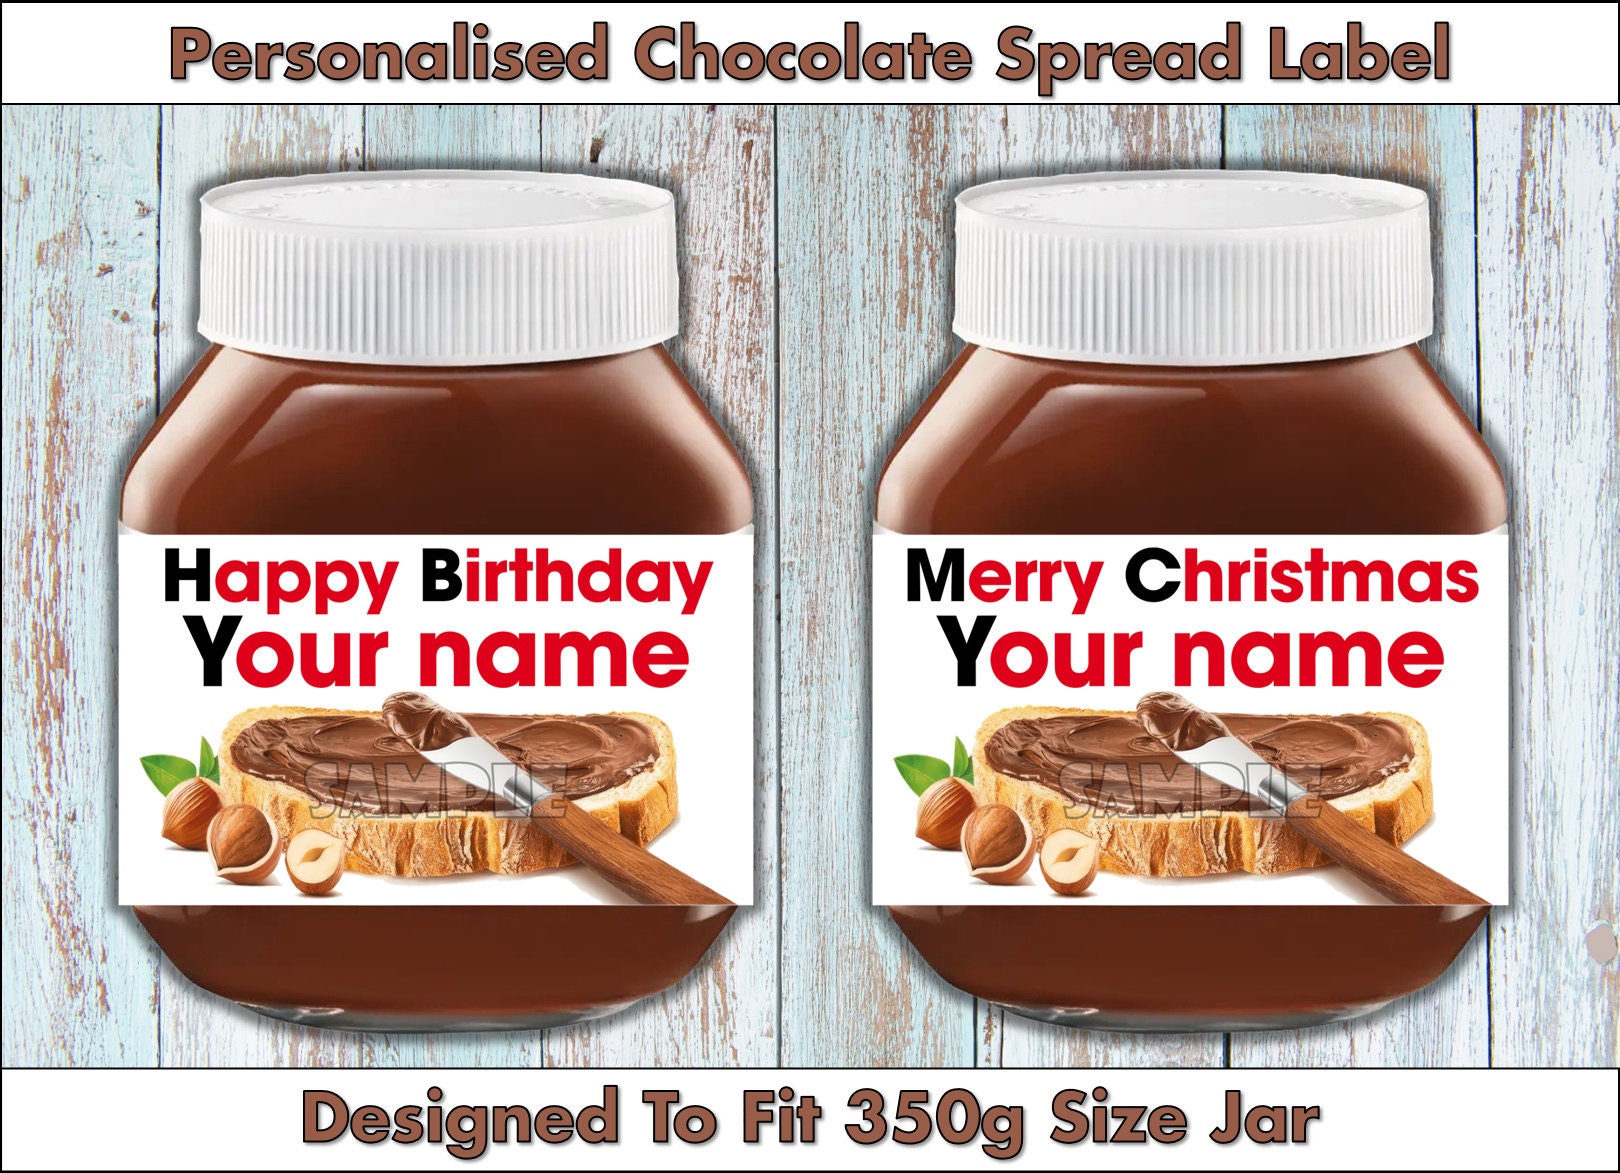 Image numérique personnalisée inspirée du Nutella pour pot de 350